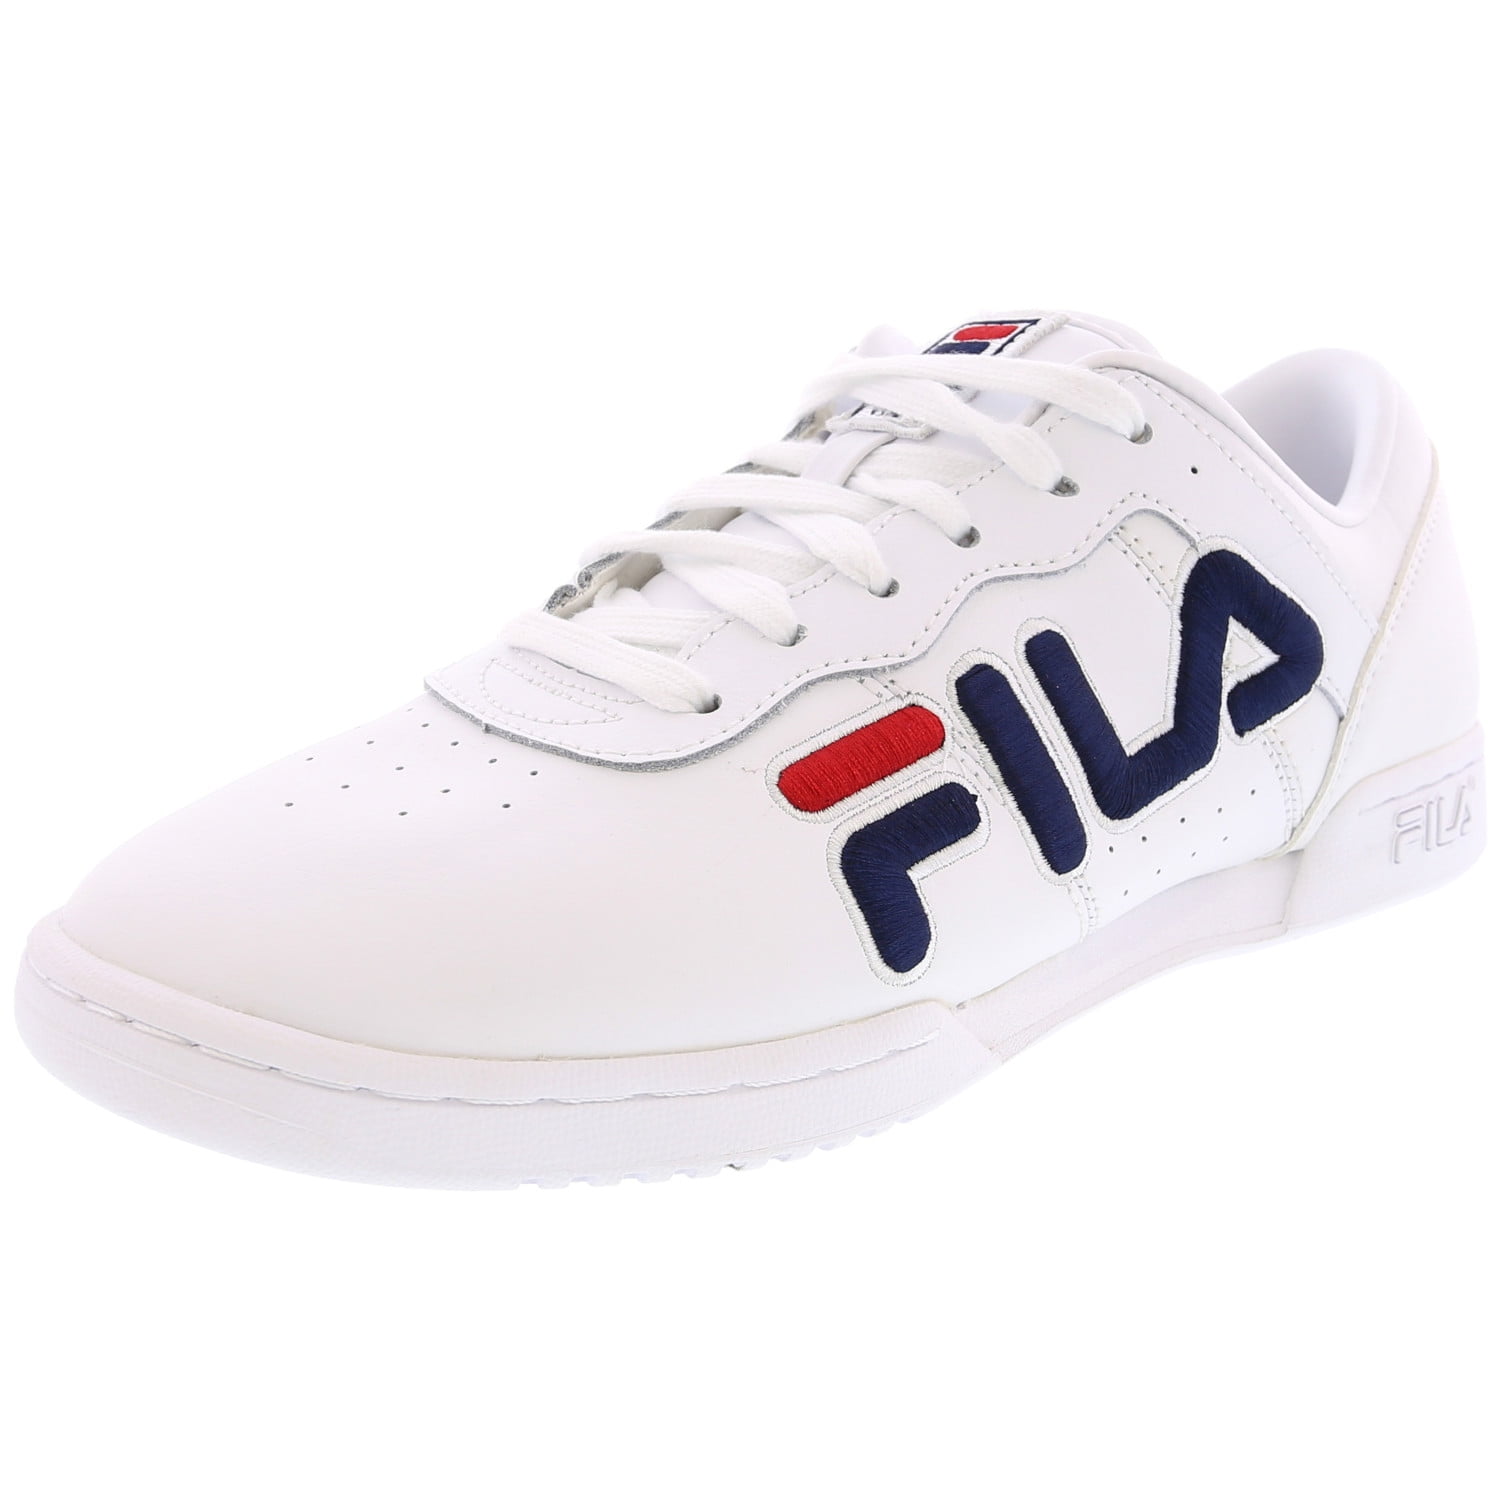 Fila Women's Original Fitness White / Navy Red Ankle-High Sneaker - 6 ...